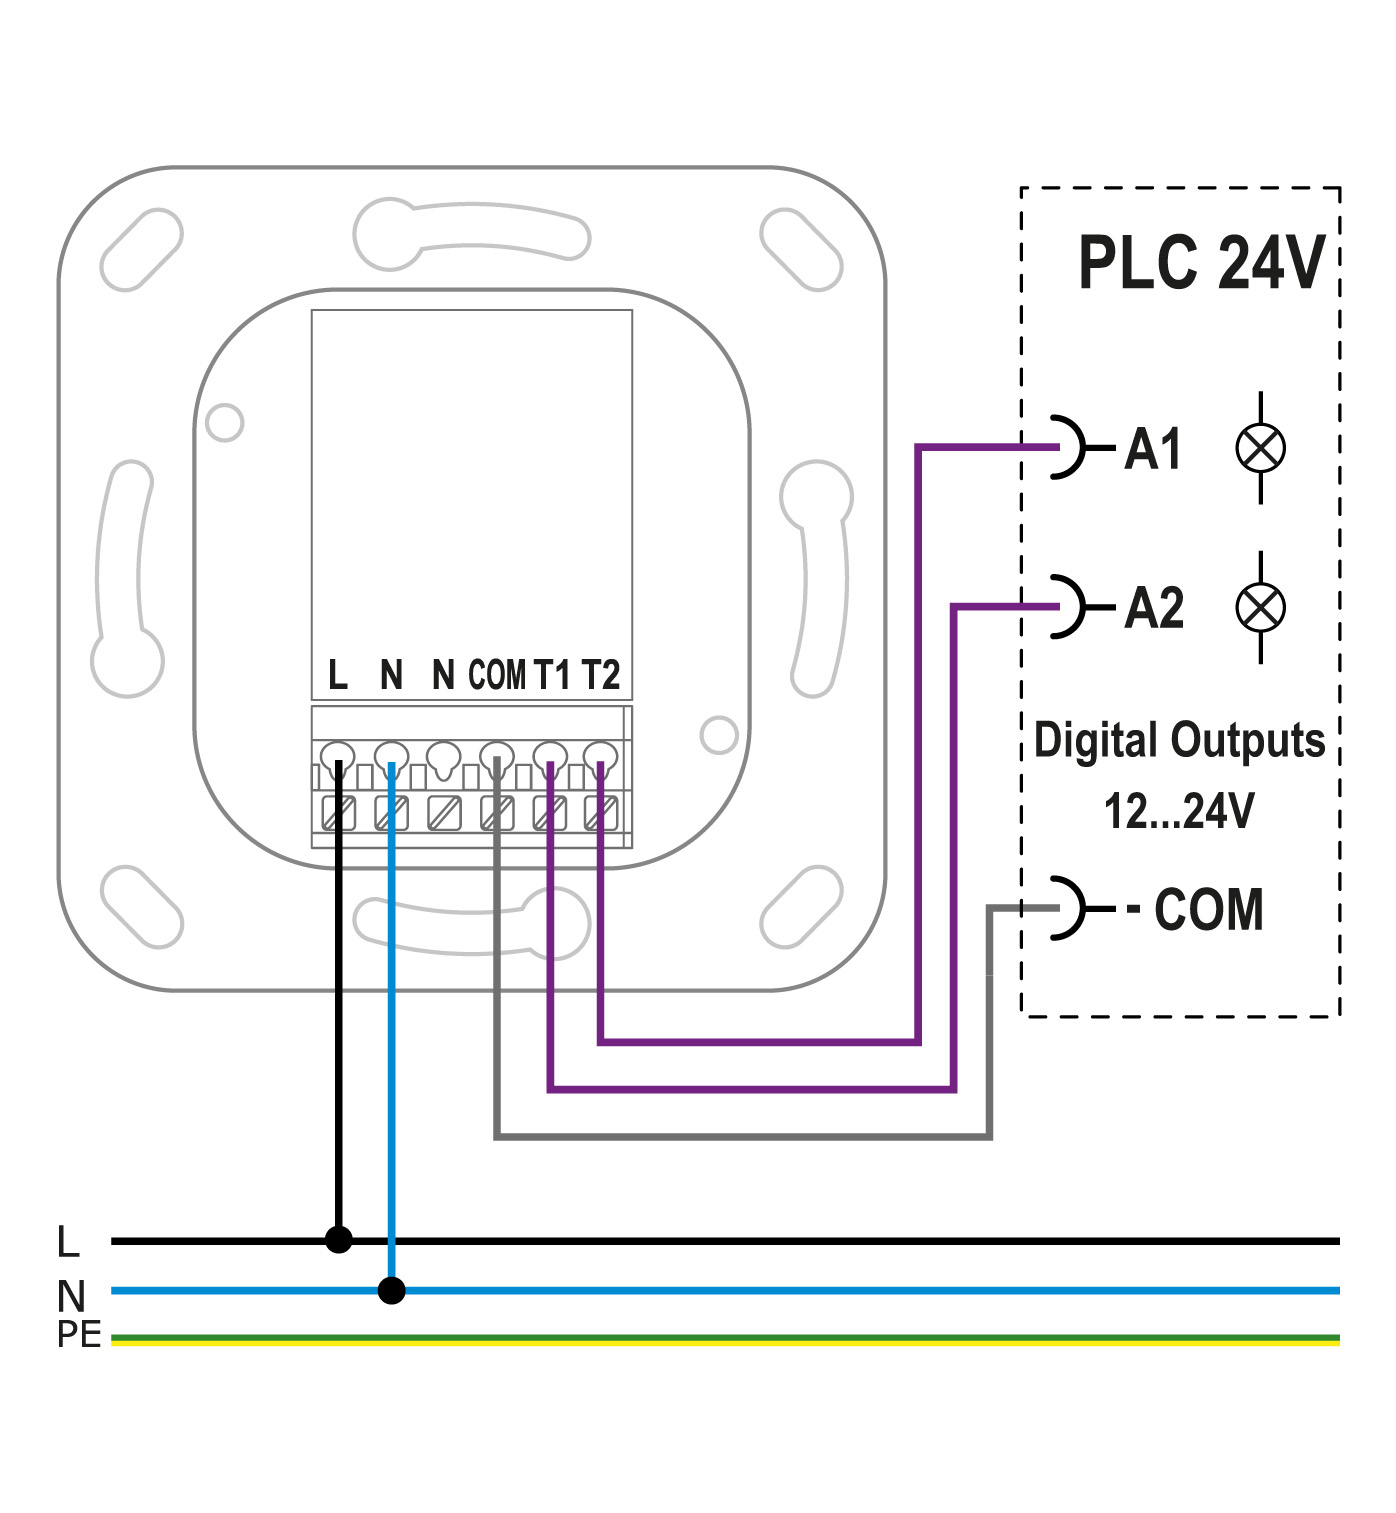 Connection diagram PLC